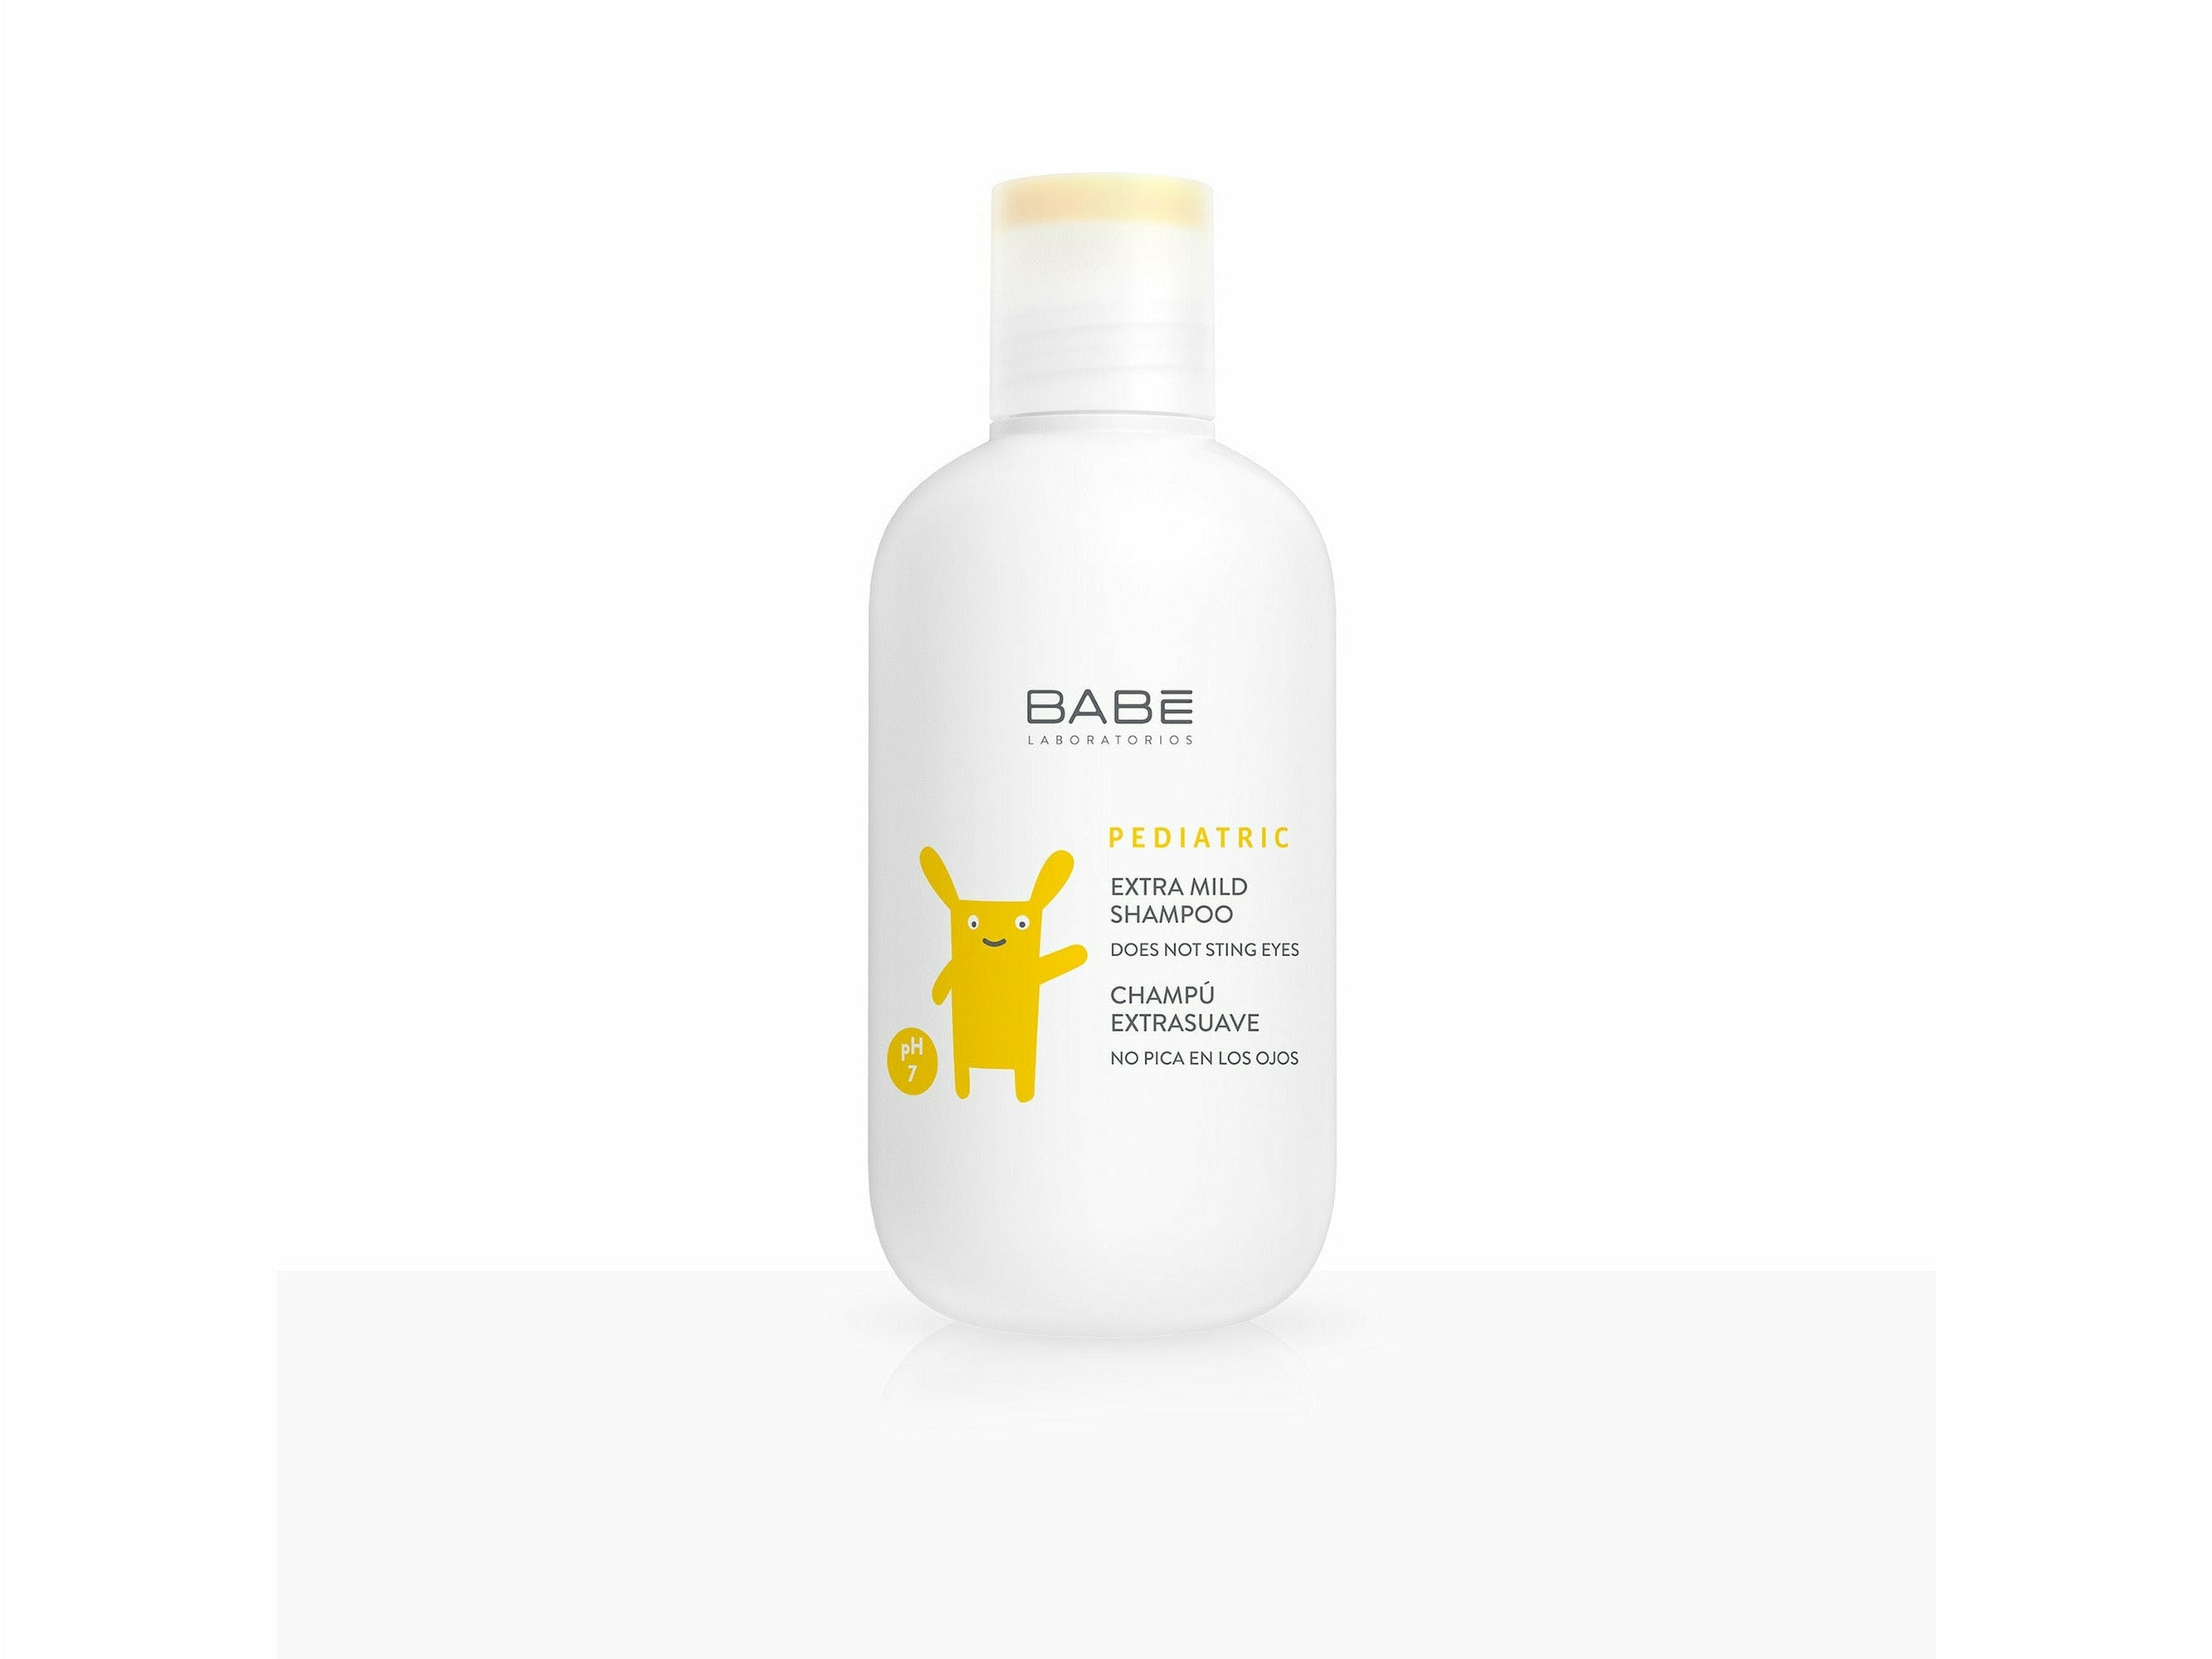 BABE Pediatric Extra Mild Shampoo - Clinikally